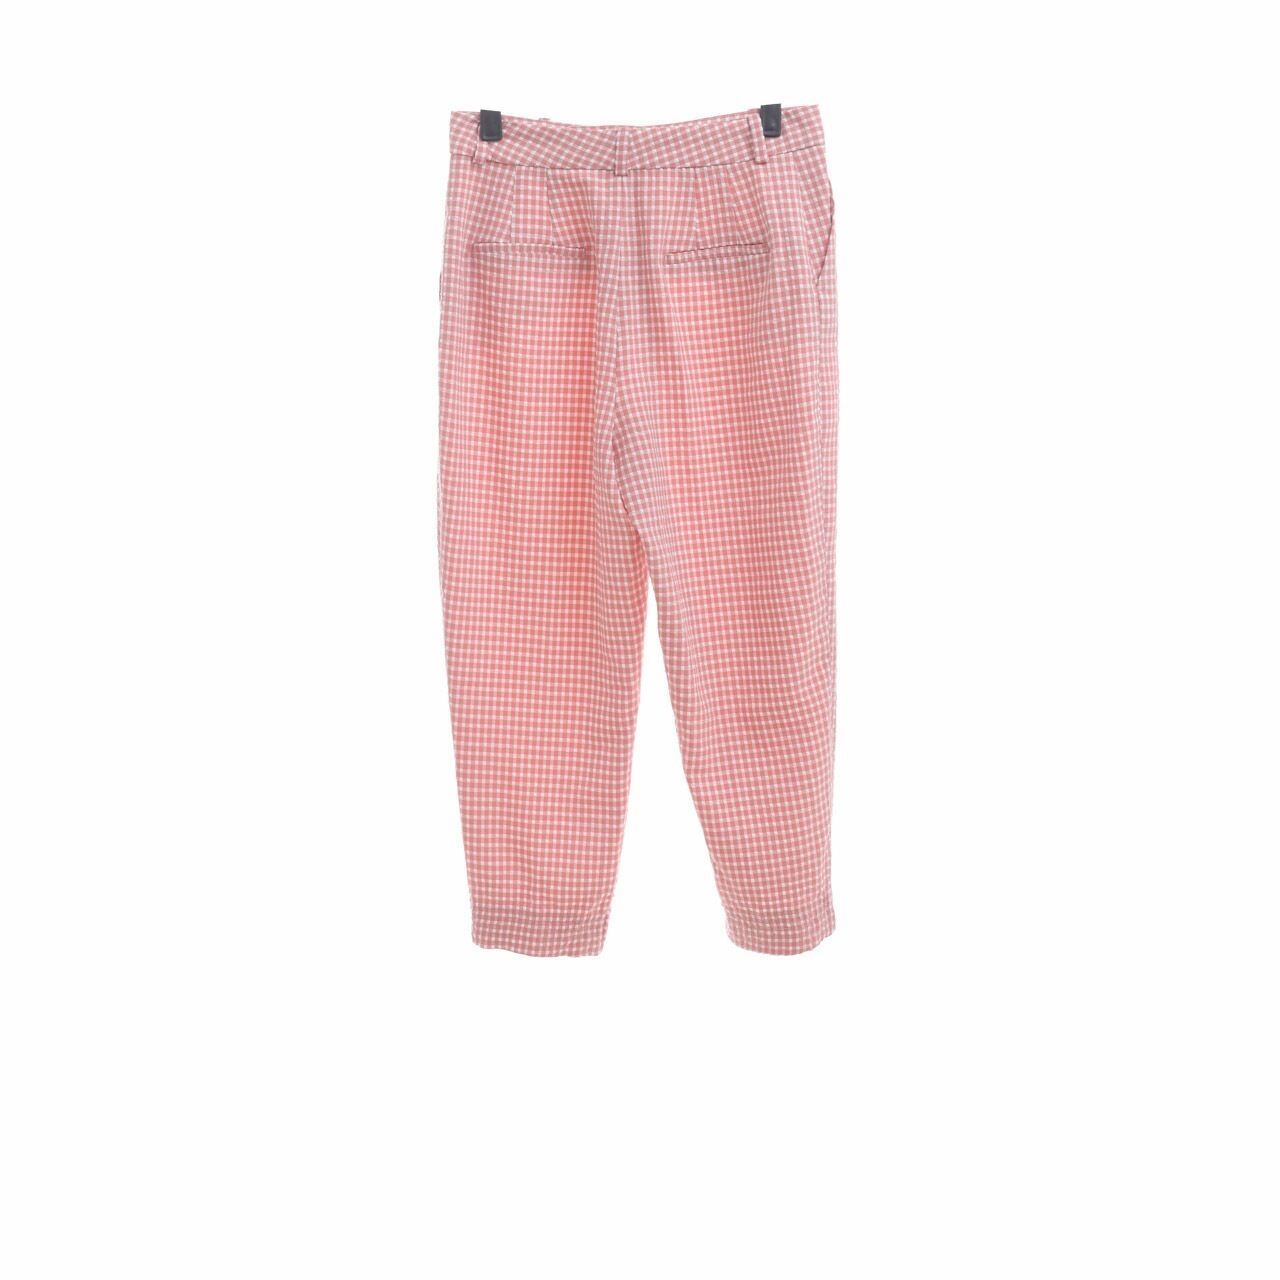 Zara Pink Checkered Long Pants